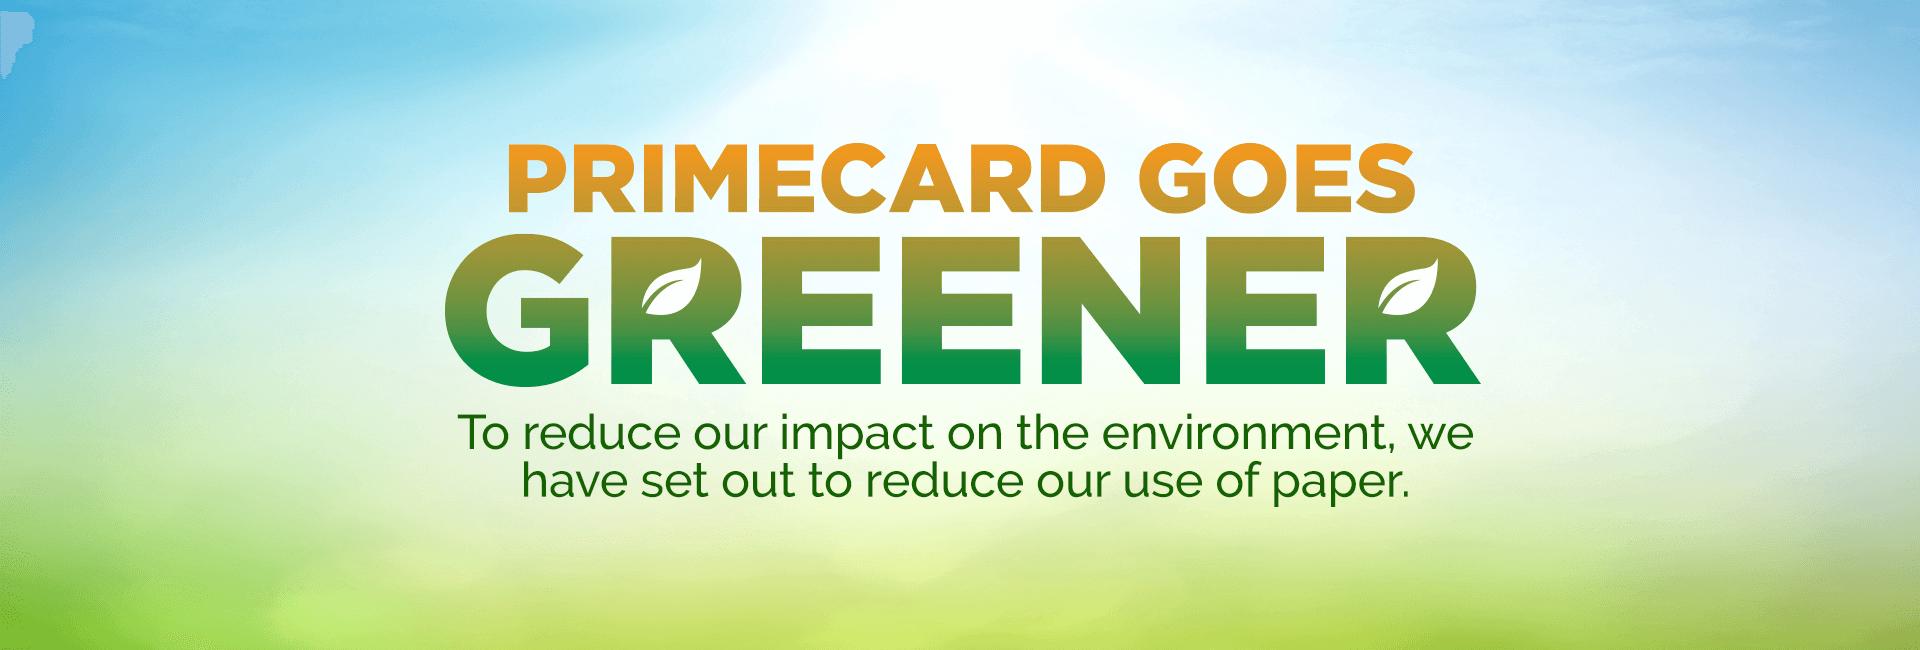 Primecard goes Greener